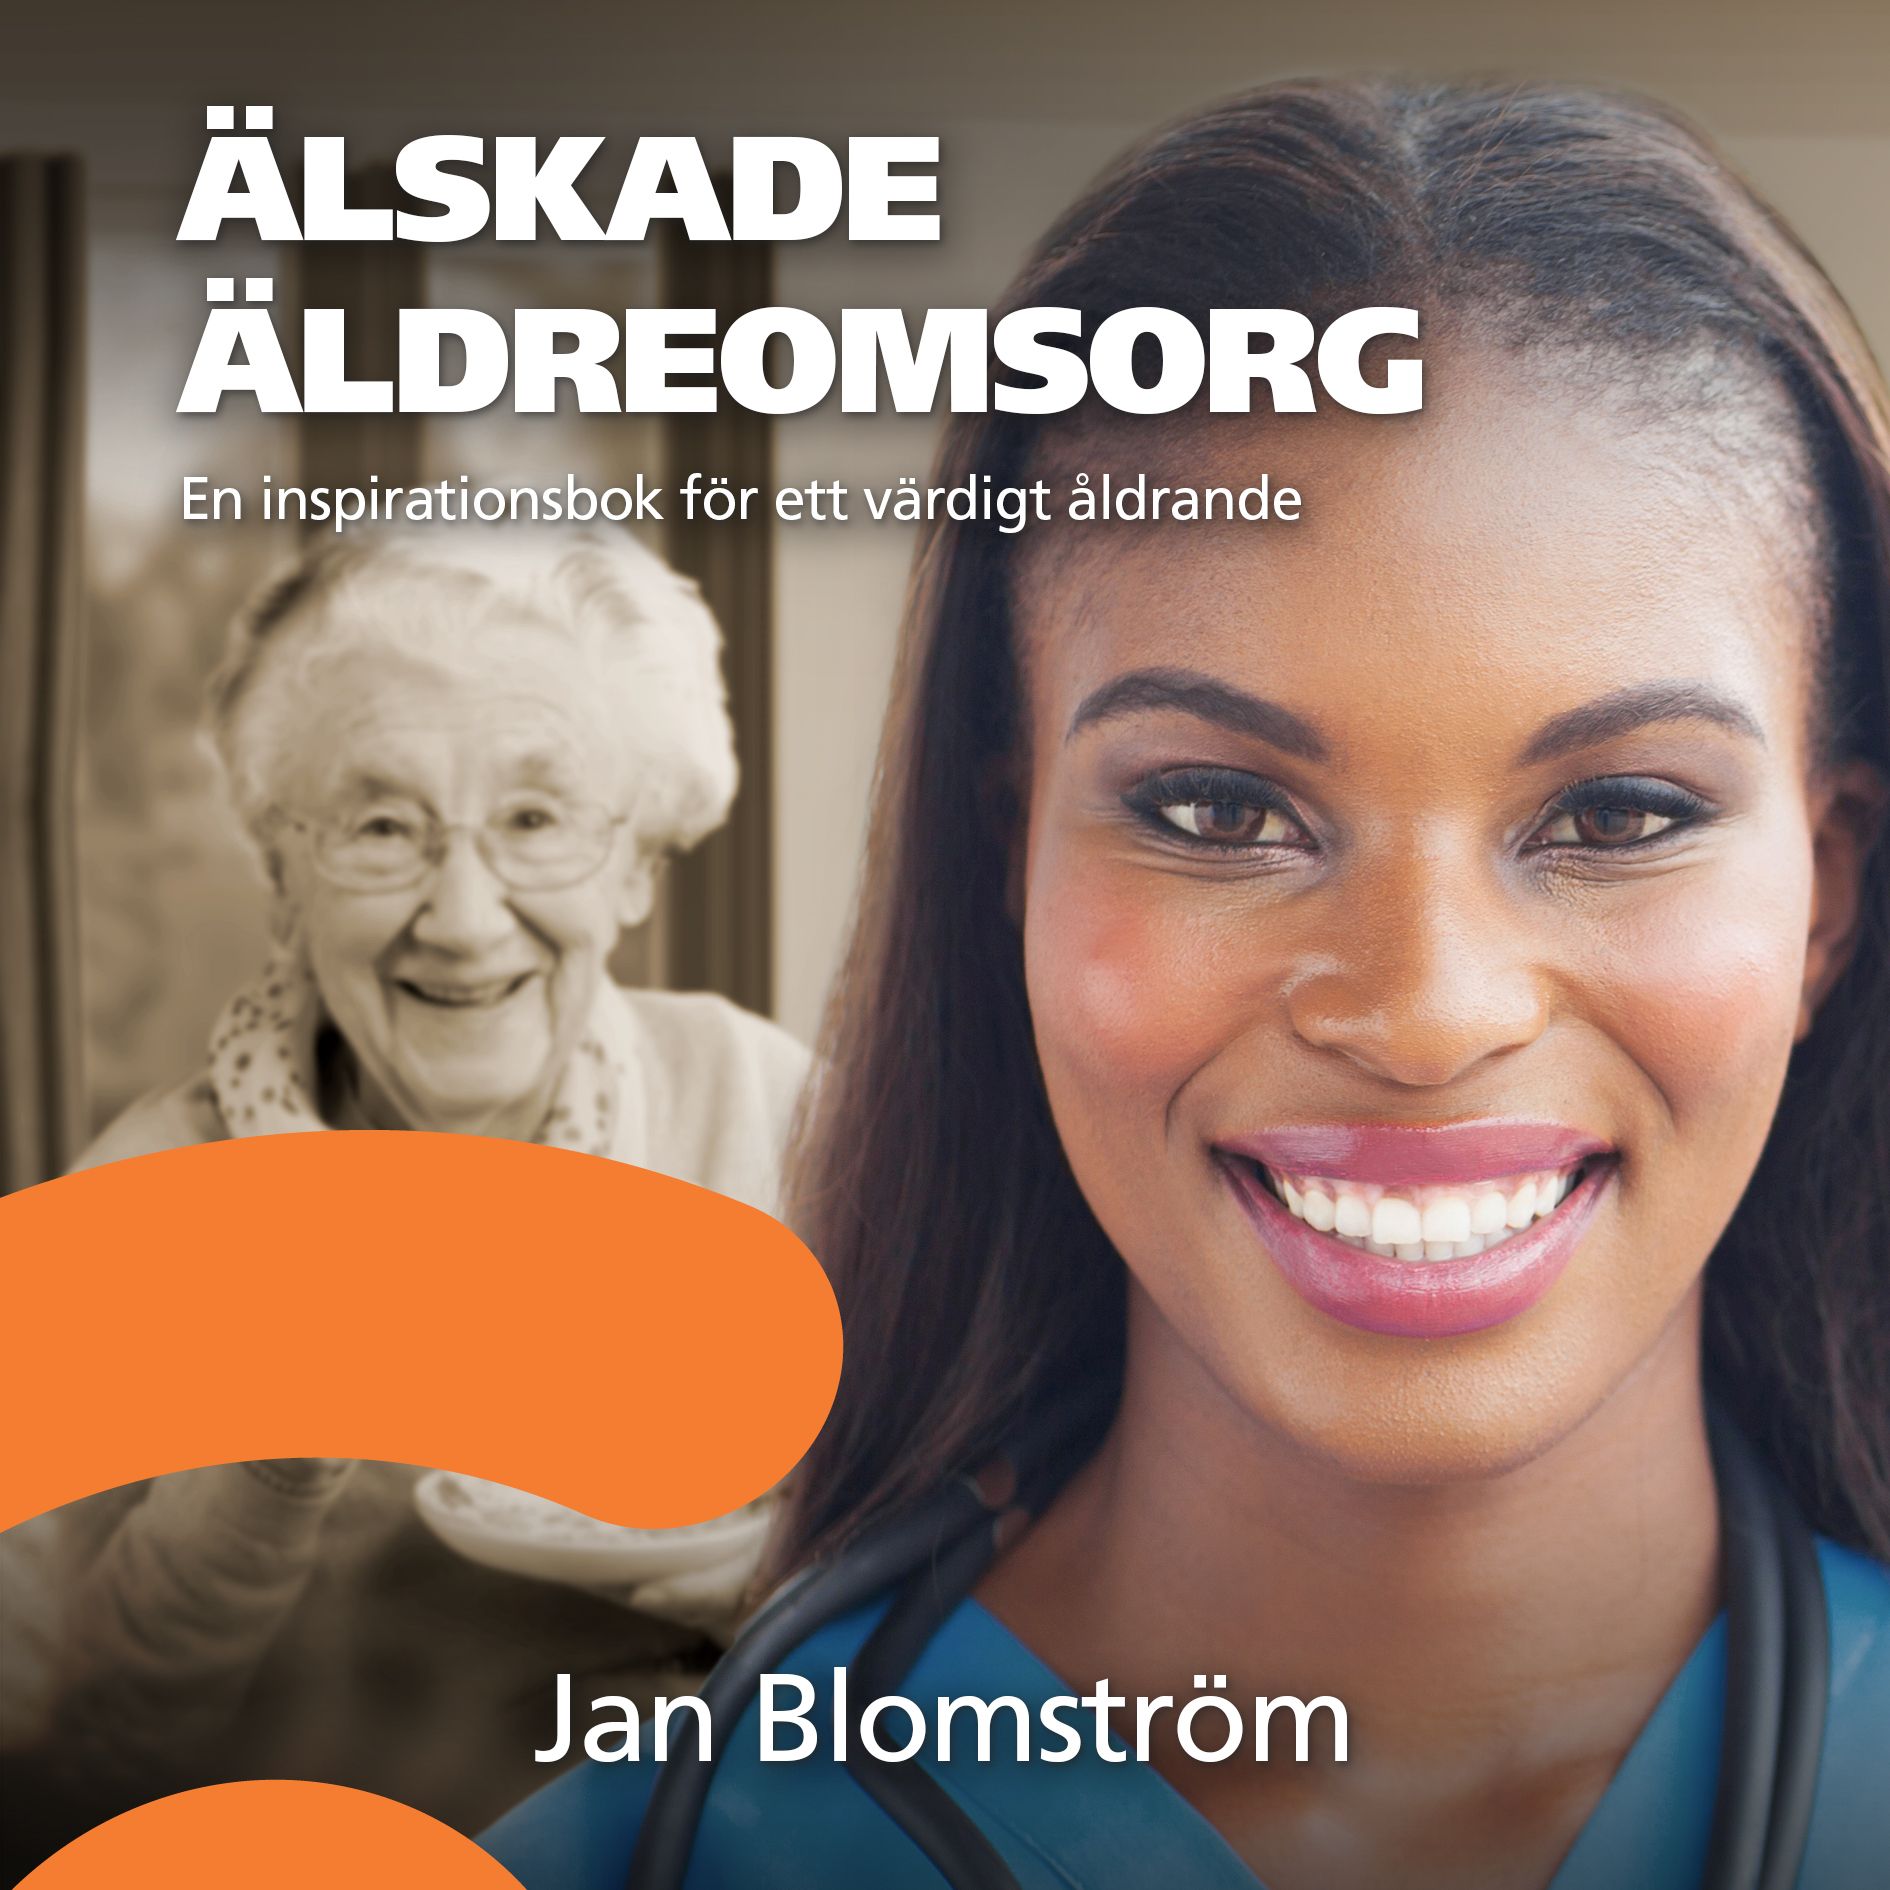 Älskade äldreomsorg, ljudbok av Jan Blomström